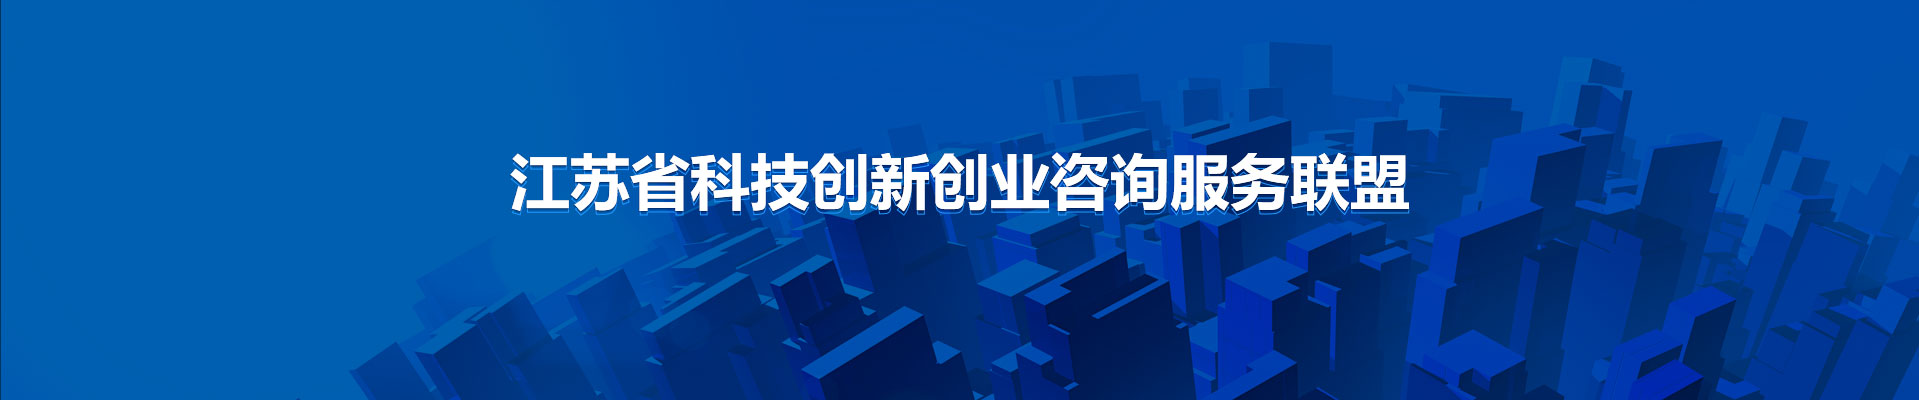 江苏省科技创新创业咨询服务联盟